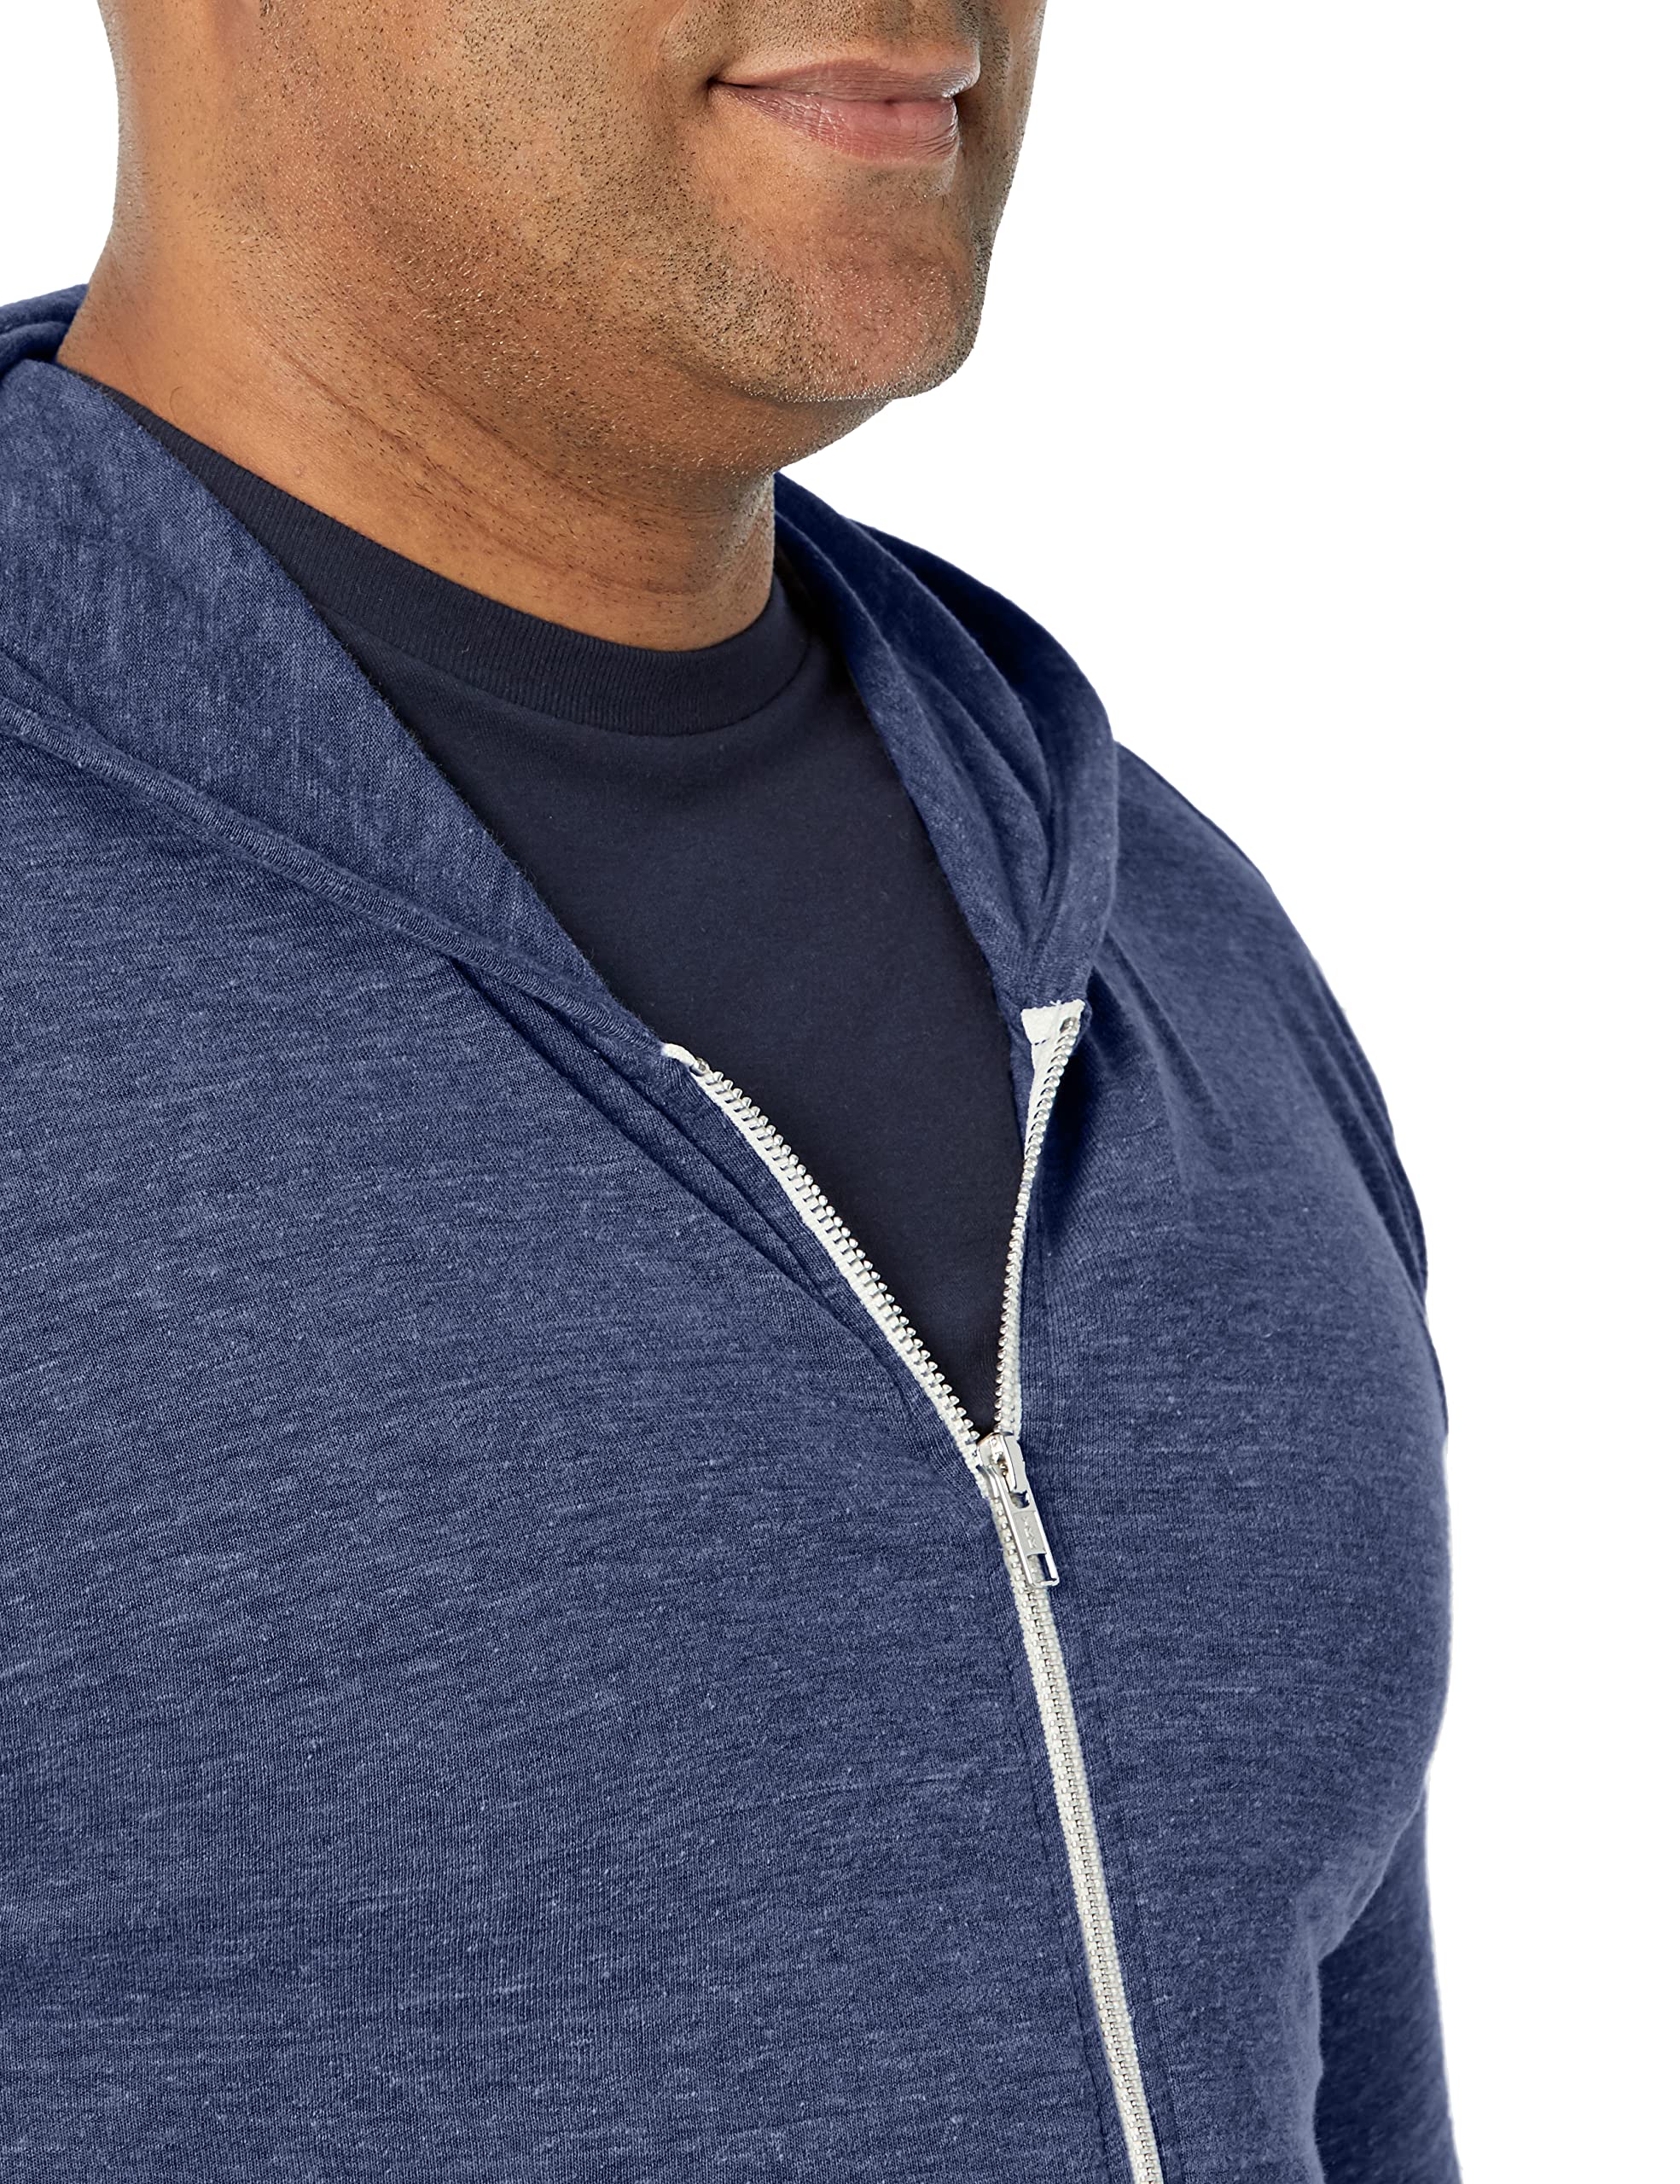 Alternative Men's Hoodie, Eco Zip Up Camo Triblend Jersey Hooded Sweatshirt